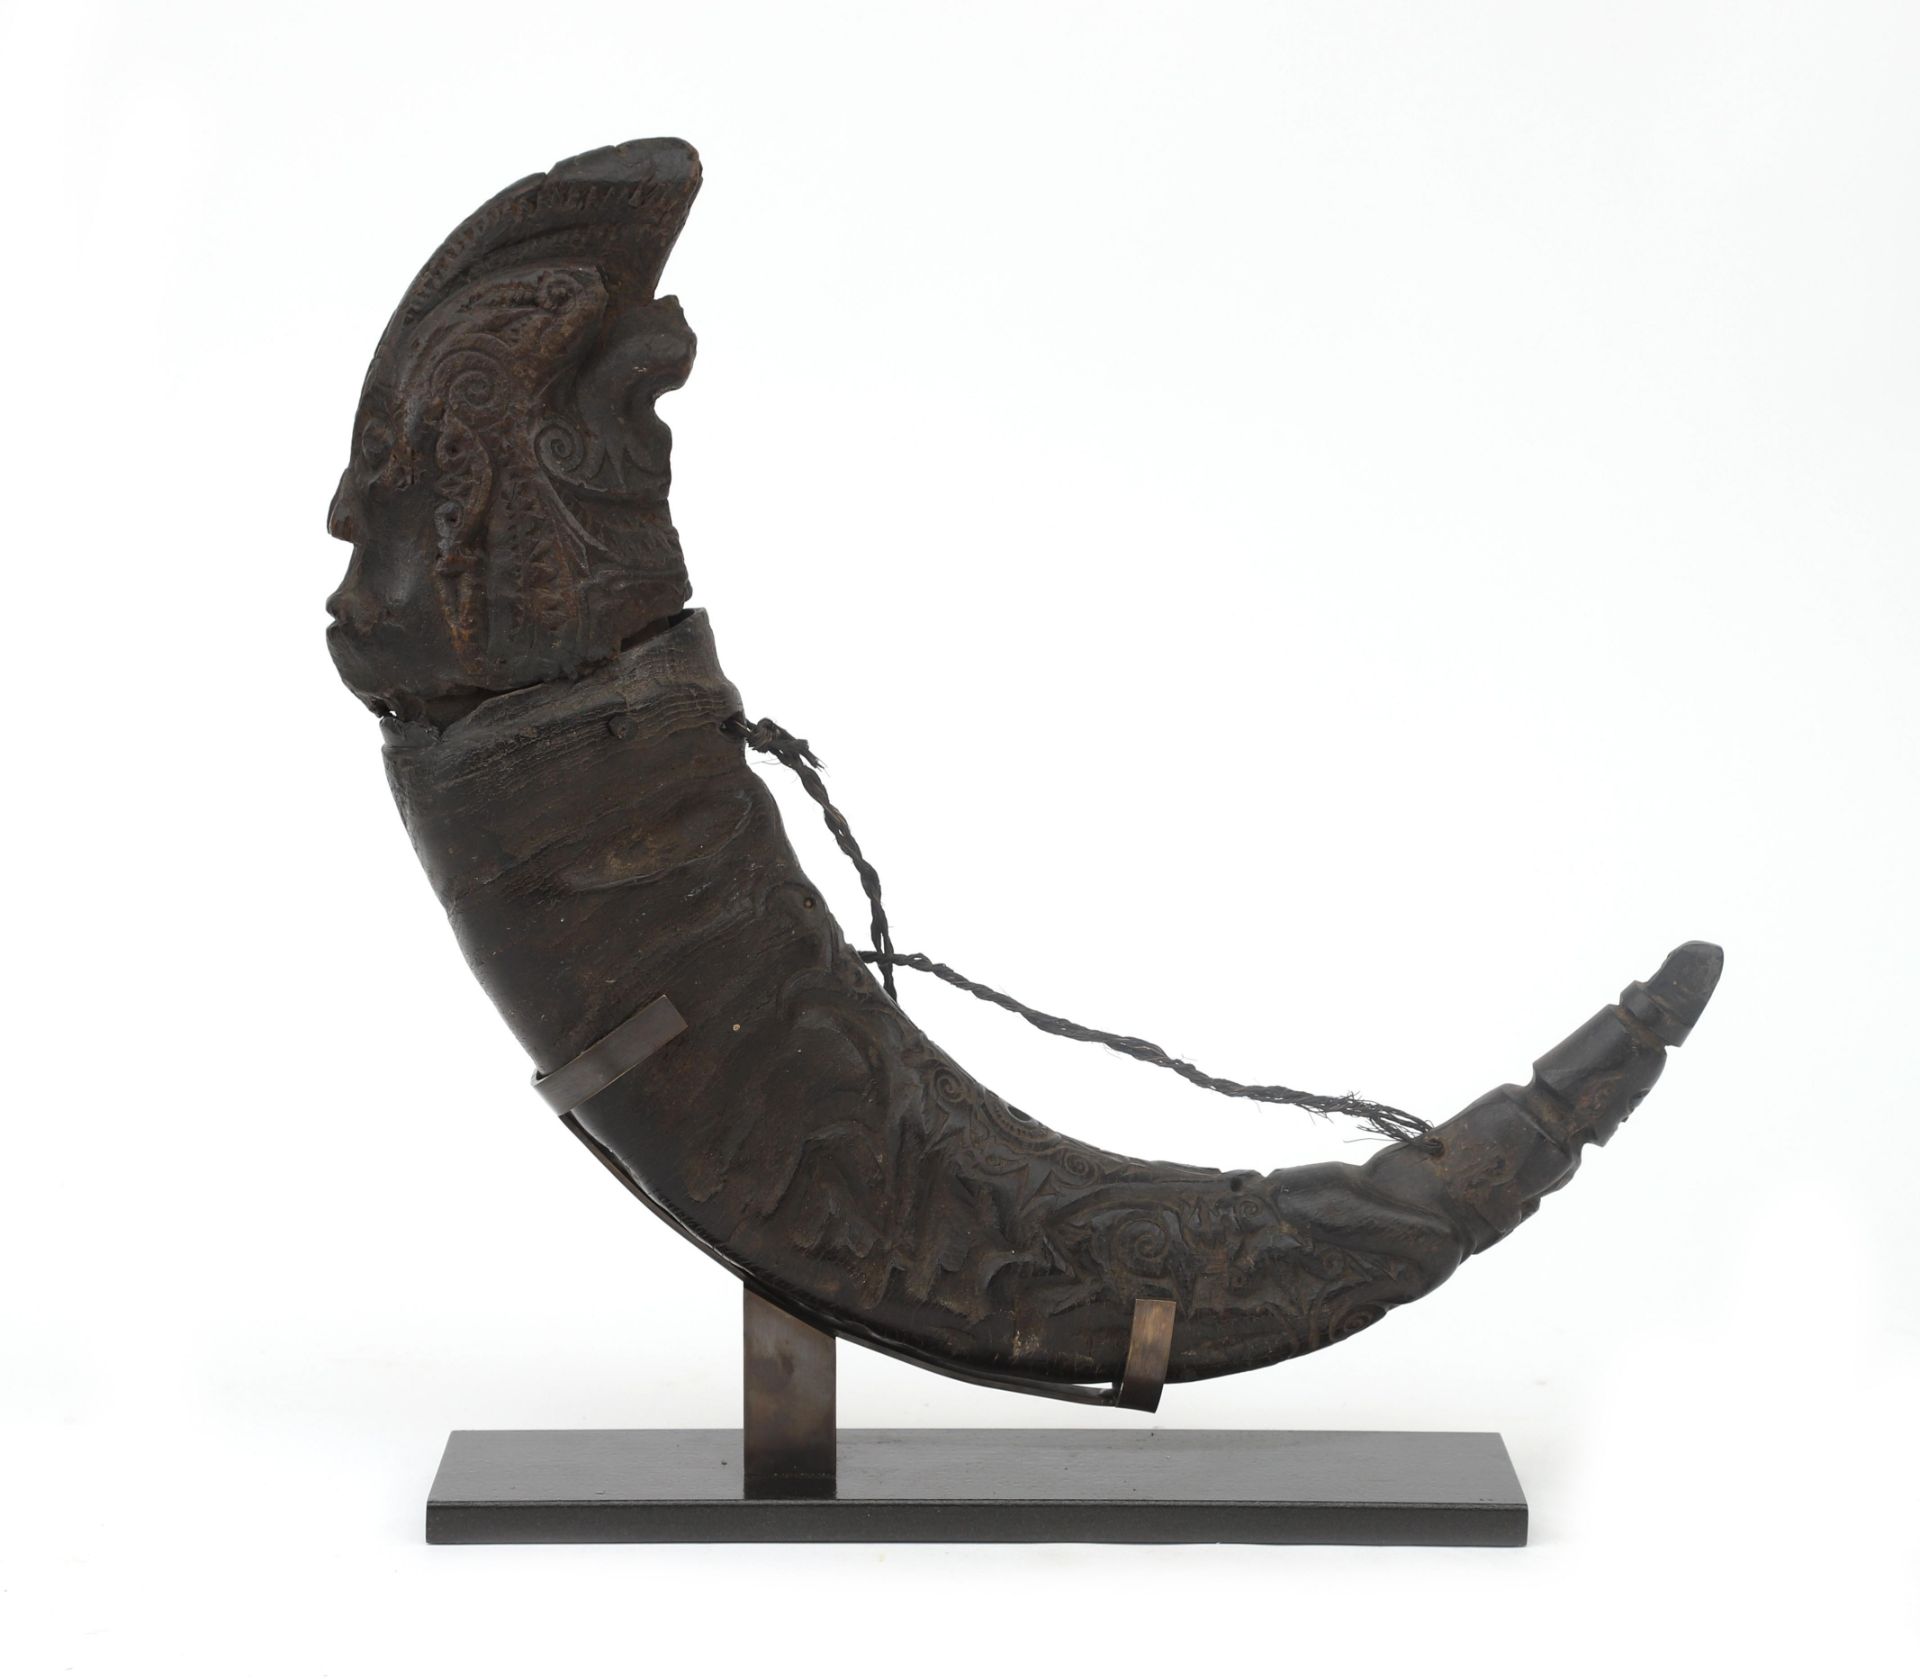 A rare Batak medicine horn (Puk Puk horn), Sahan Naga Morsarang, Sumatra, Indonesia, ca. 1900.